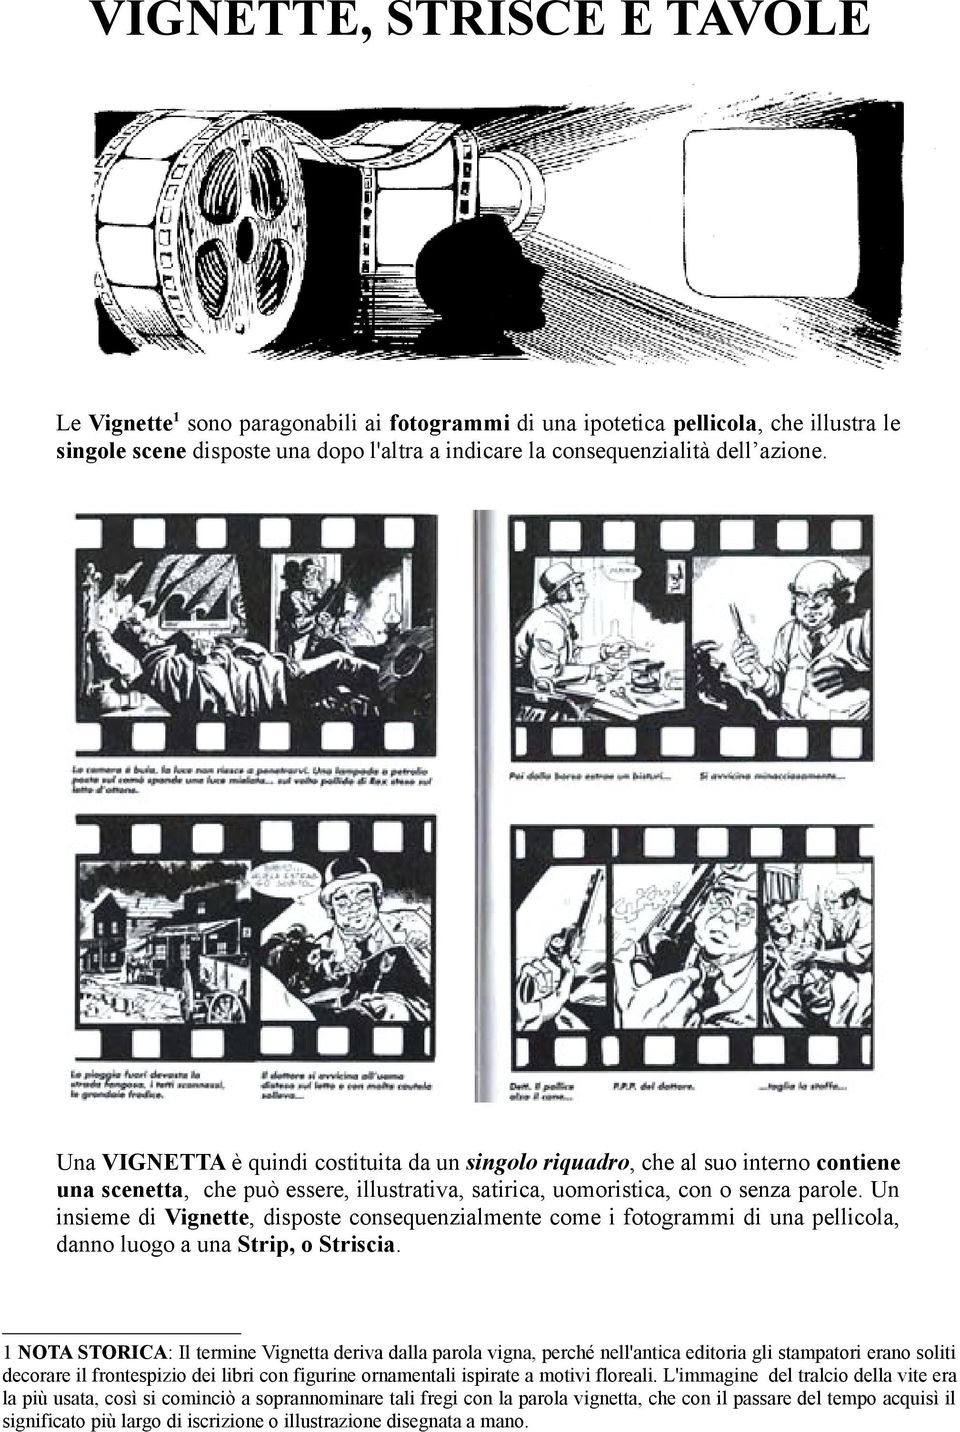 Un insieme di Vignette, disposte consequenzialmente come i fotogrammi di una pellicola, danno luogo a una Strip, o Striscia.